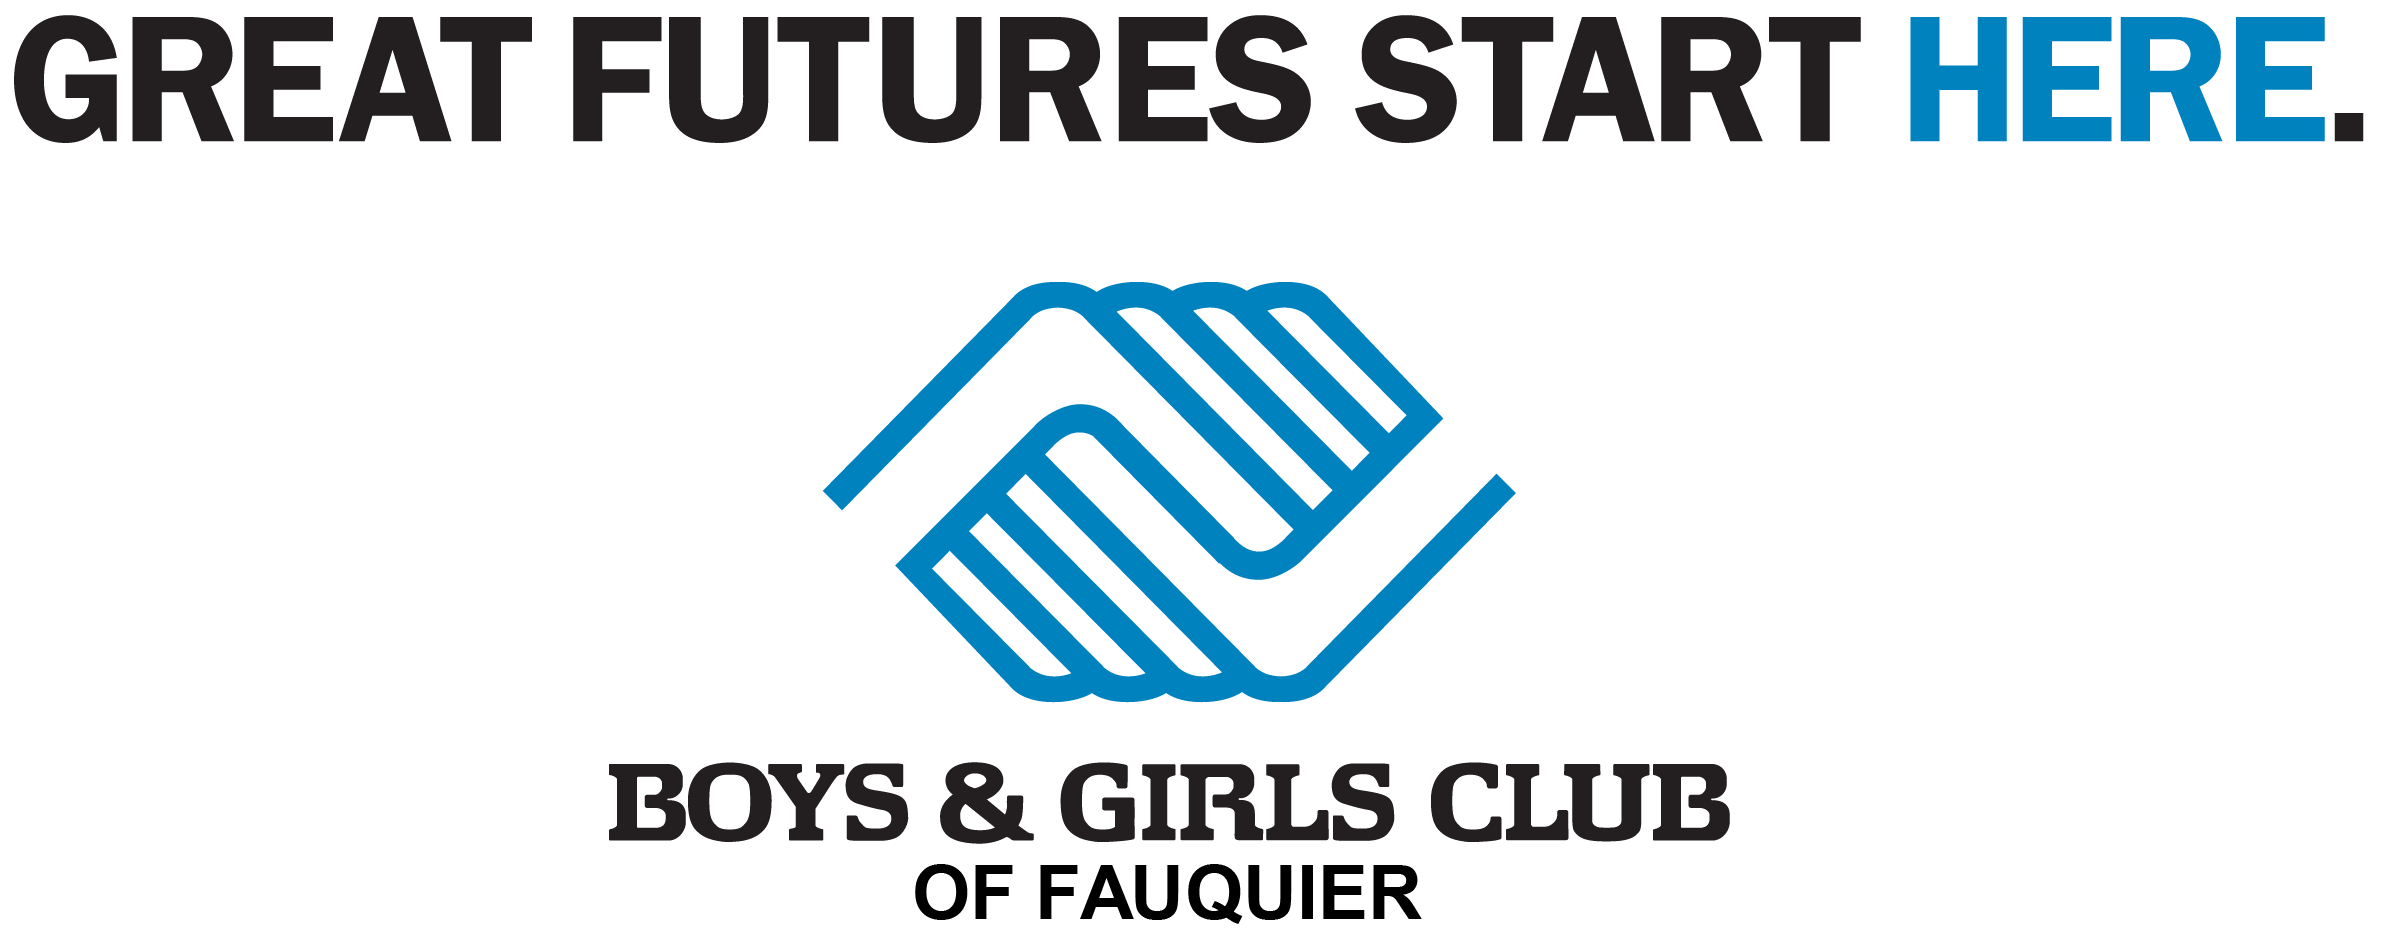 Boys & Girls Club of Fauquier'